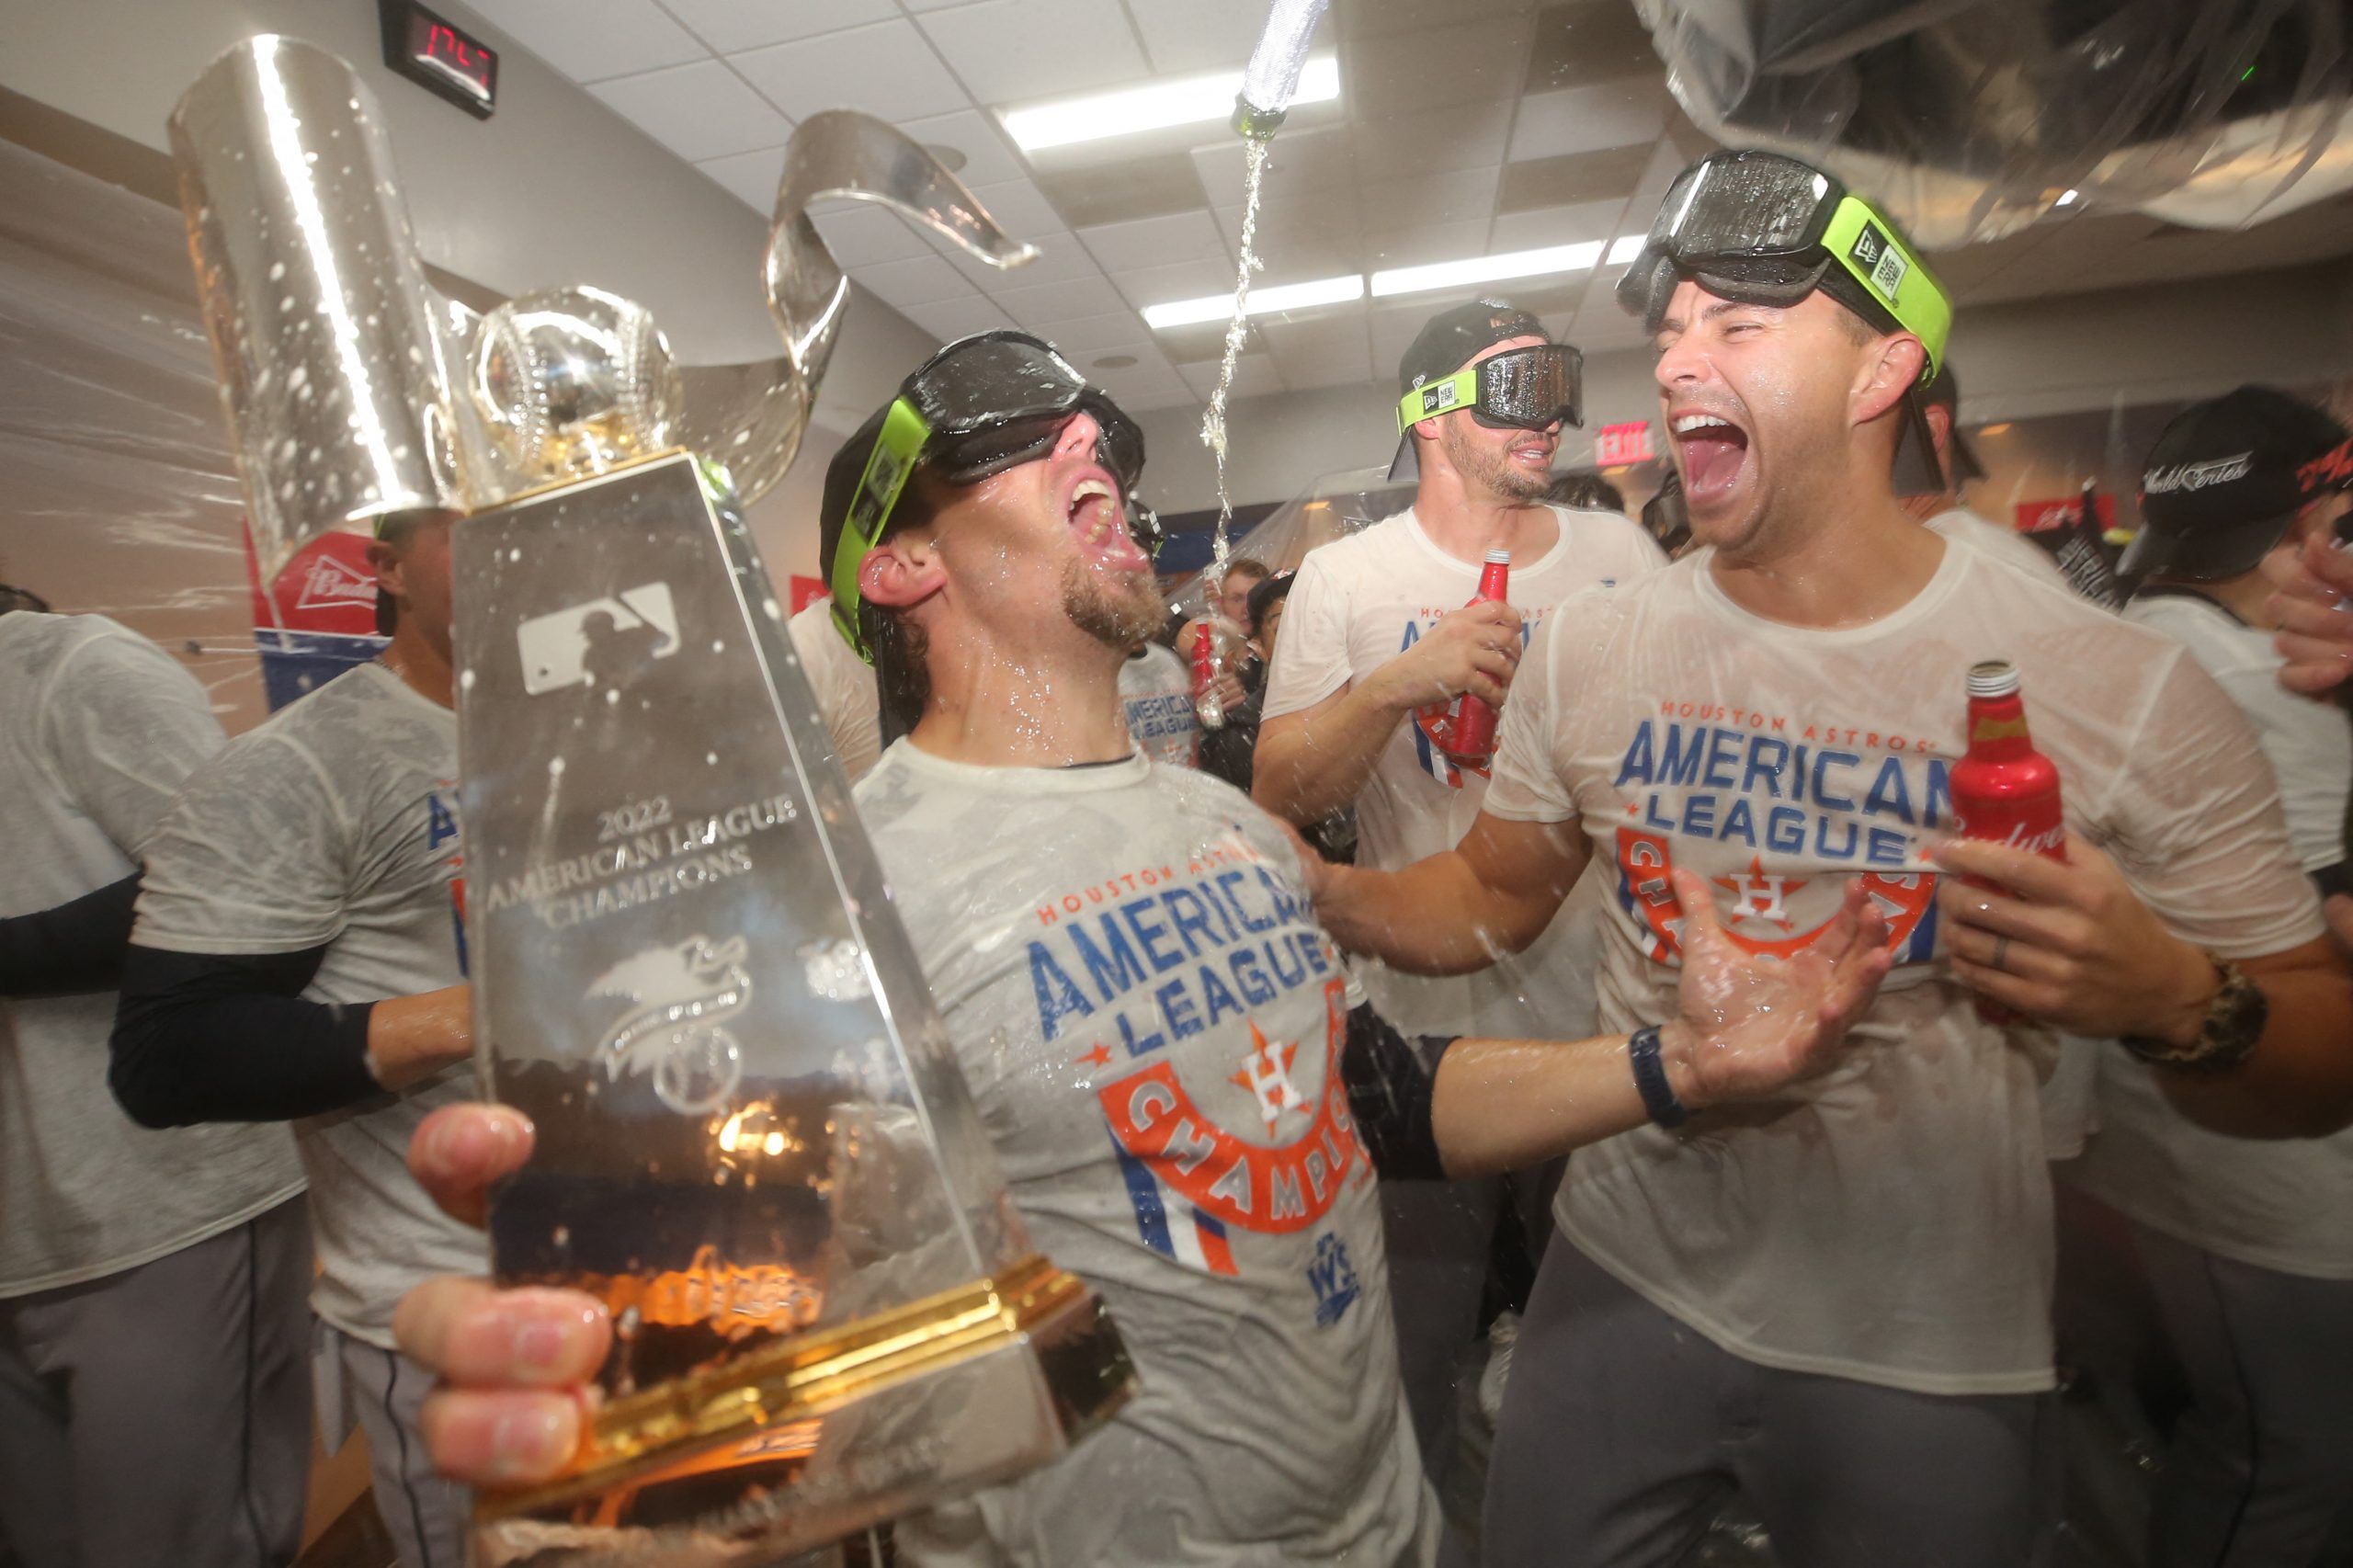 Astros receive ALCS trophy, 10/23/2022